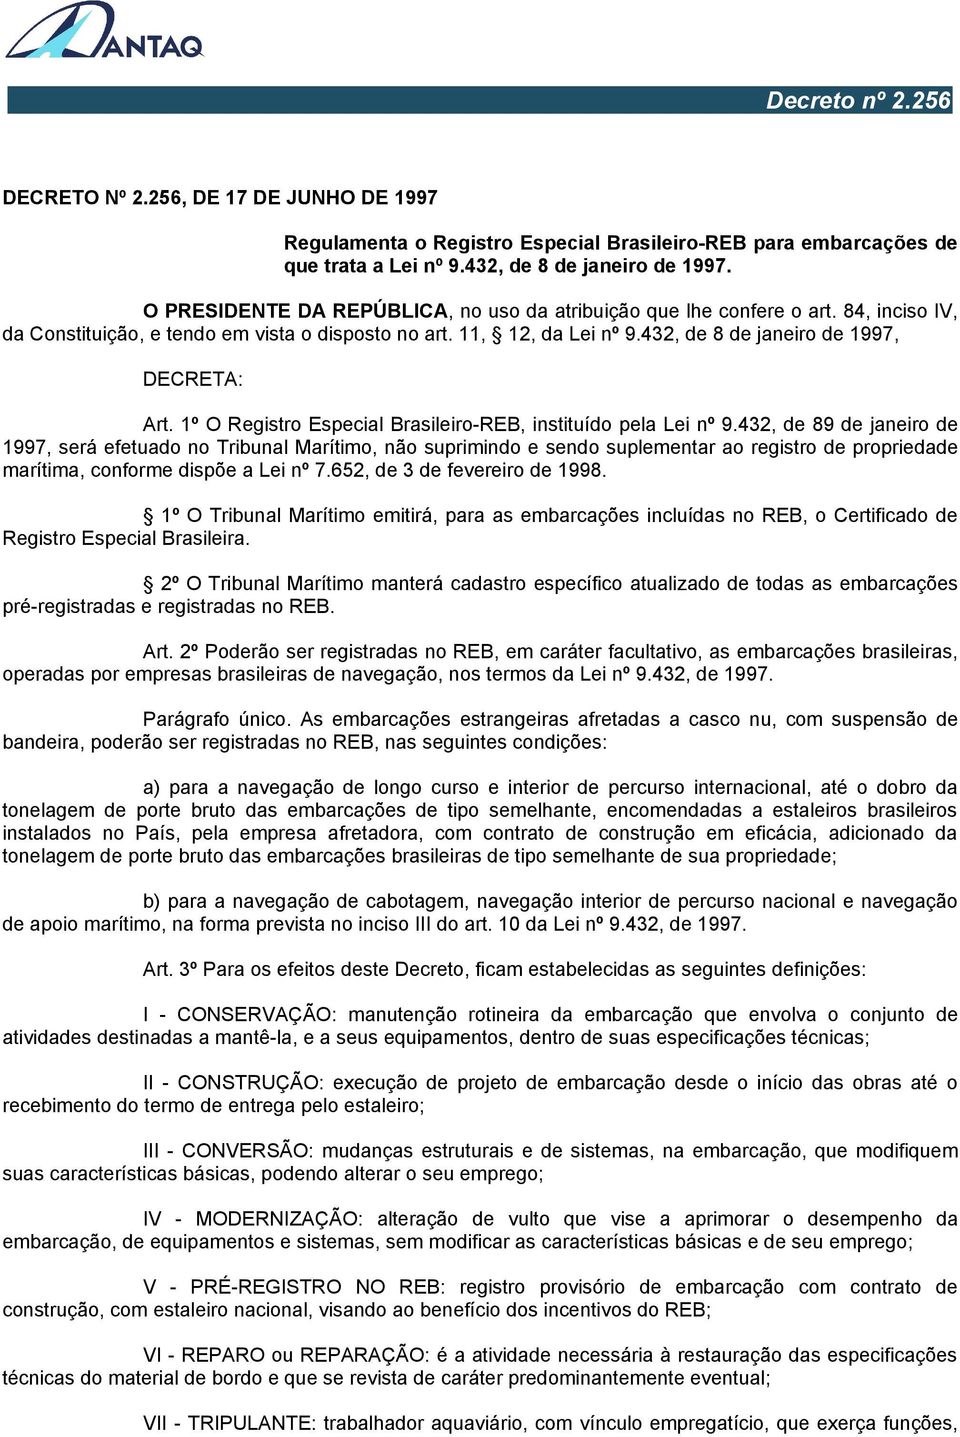 432, de 8 de janeiro de 1997, DECRETA: Art. 1º O Registro Especial Brasileiro-REB, instituído pela Lei nº 9.